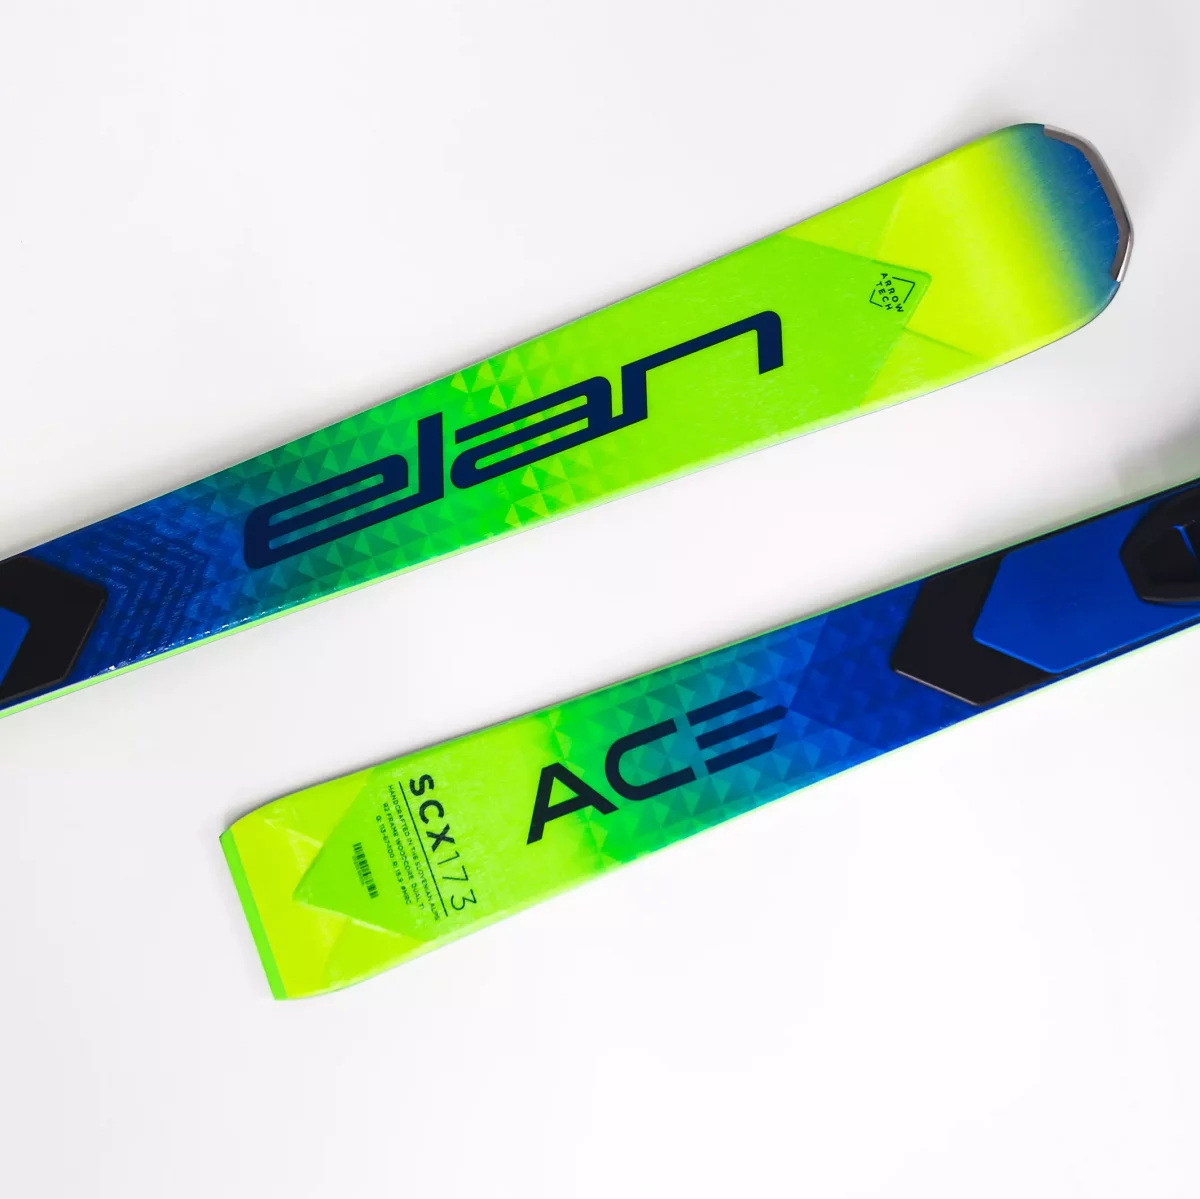 Elan Ace skis in square crop